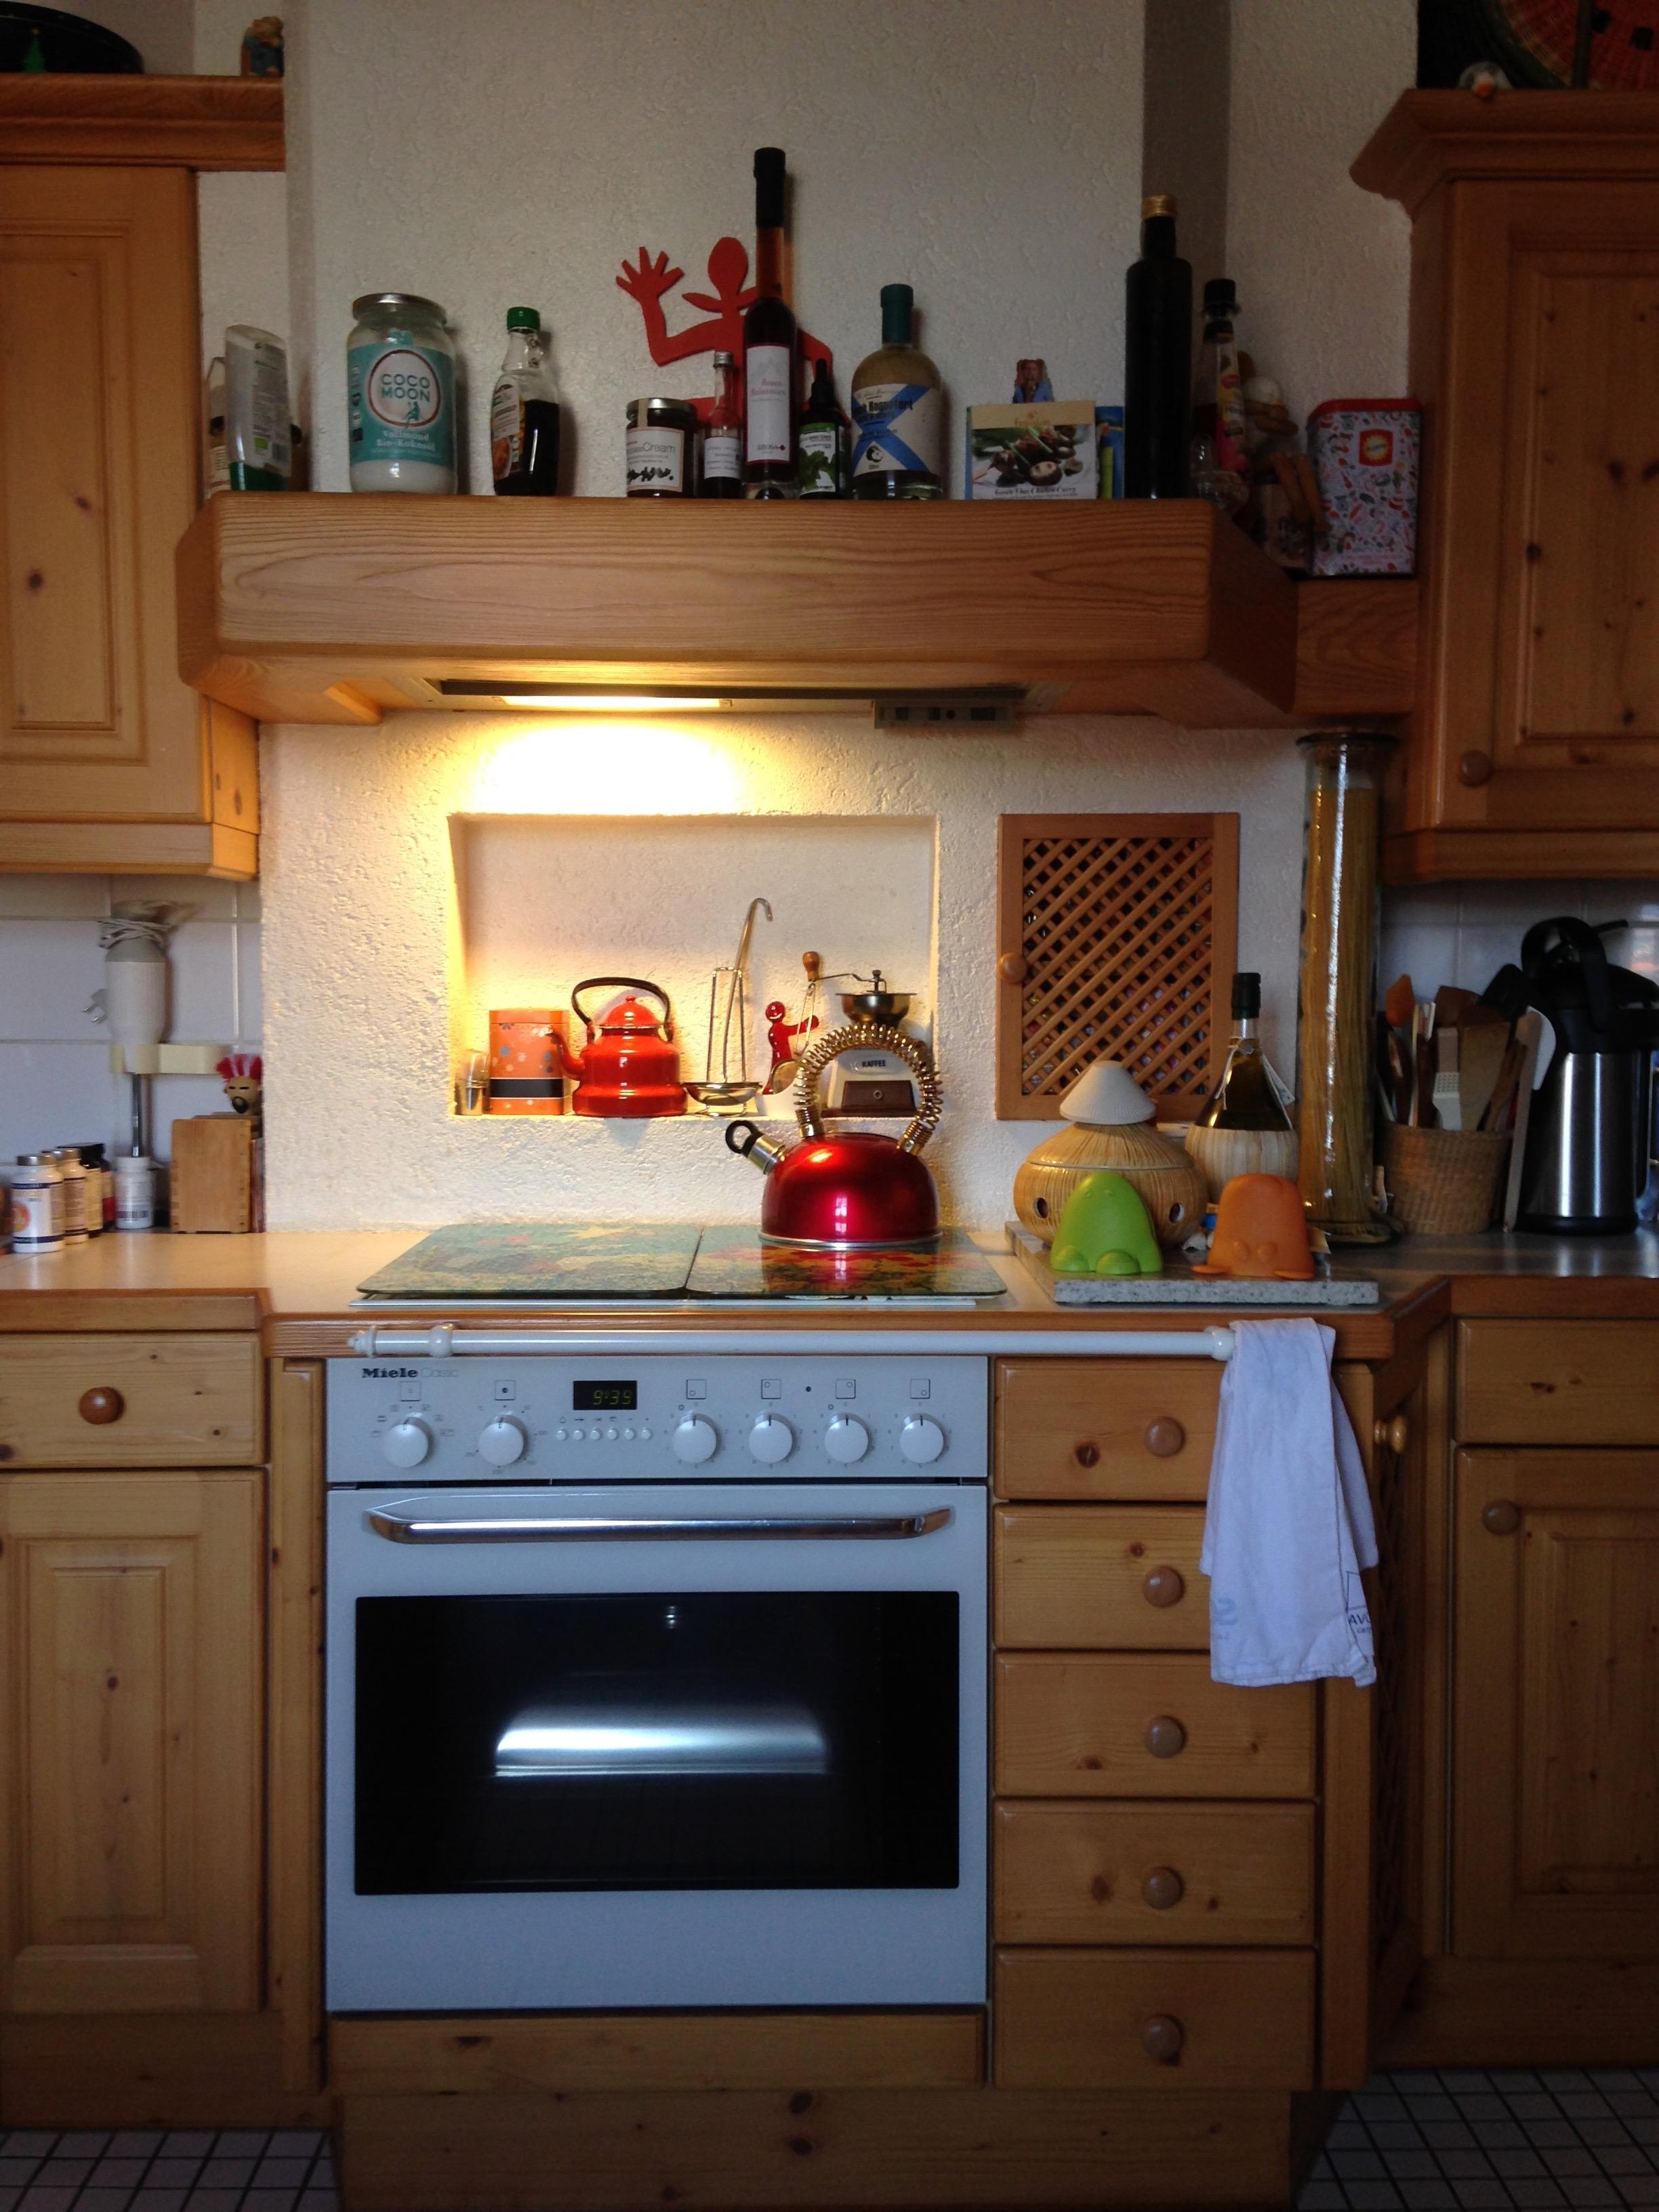 #livingchallenge #küchendeko I love my kitchen und es geht bunt zu bei mir, der schönste Platz in der Wohnung!